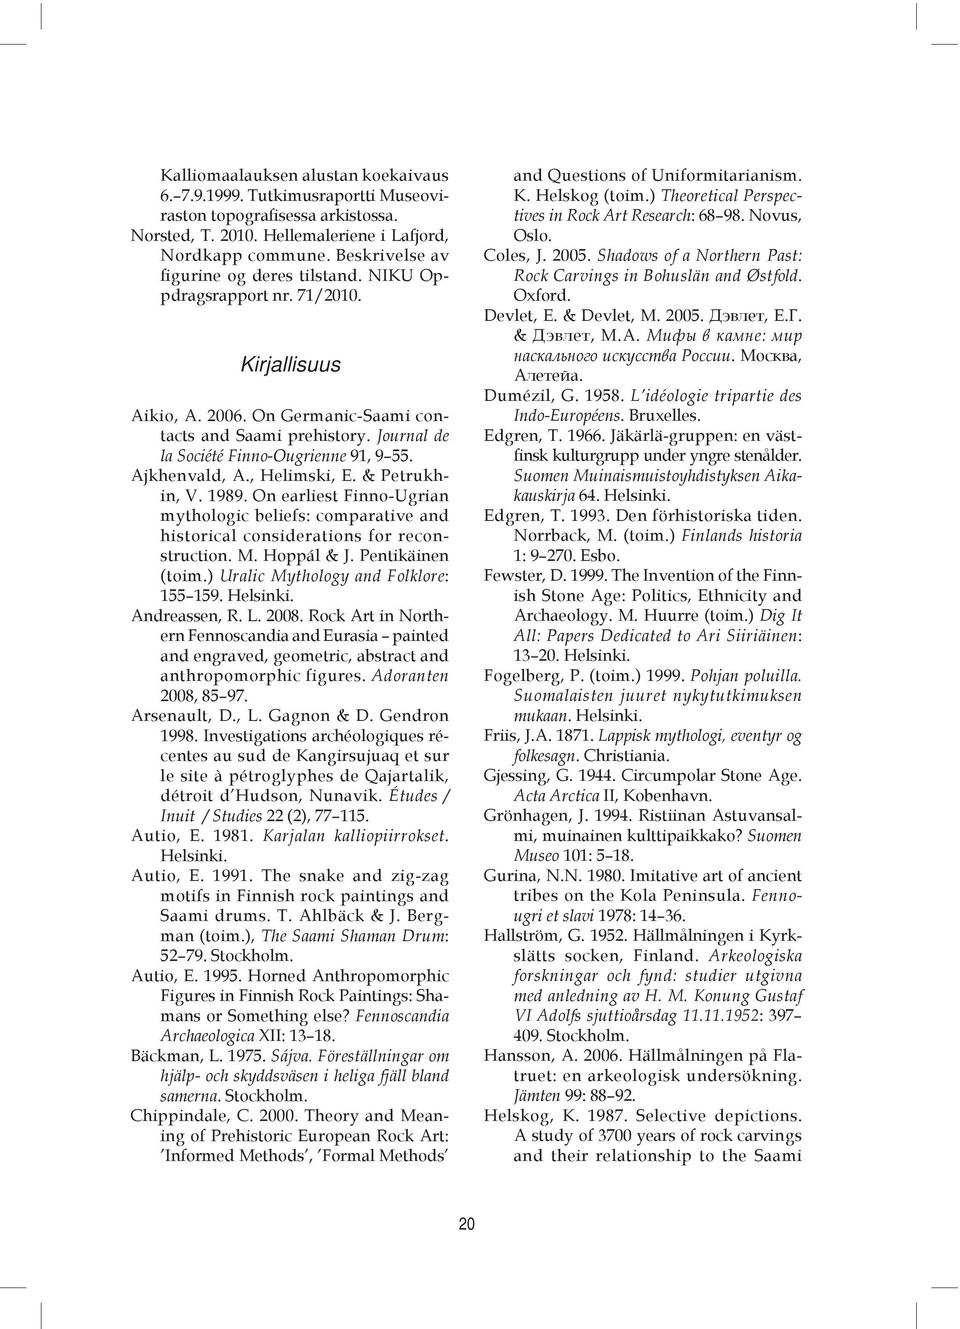 Journal de la Société Finno-Ougrienne 91, 9 55. Ajkhenvald, A., Helimski, E. & Petrukhin, V. 1989.